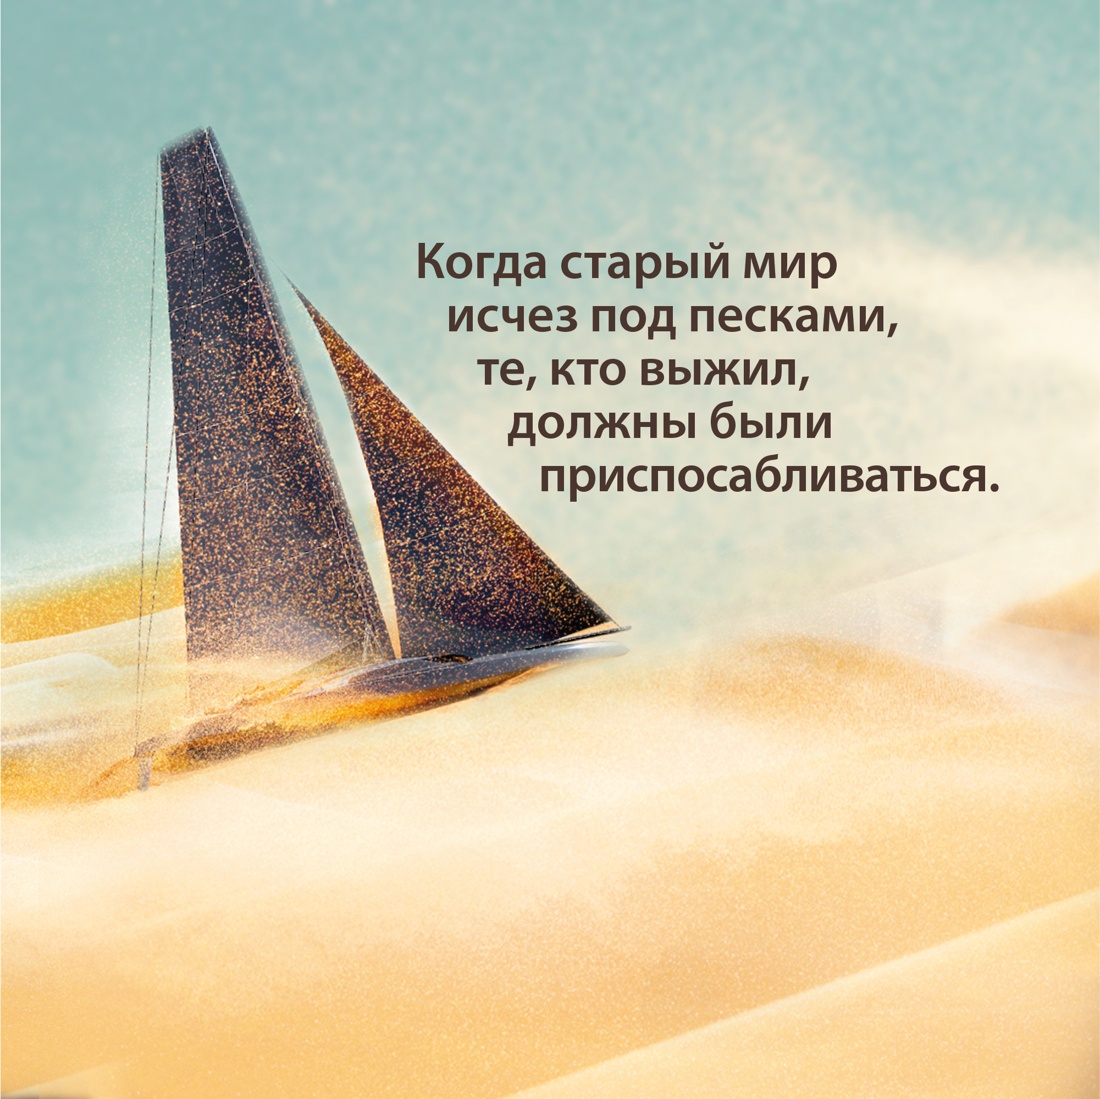 Промо материал к книге "Через пески" №2